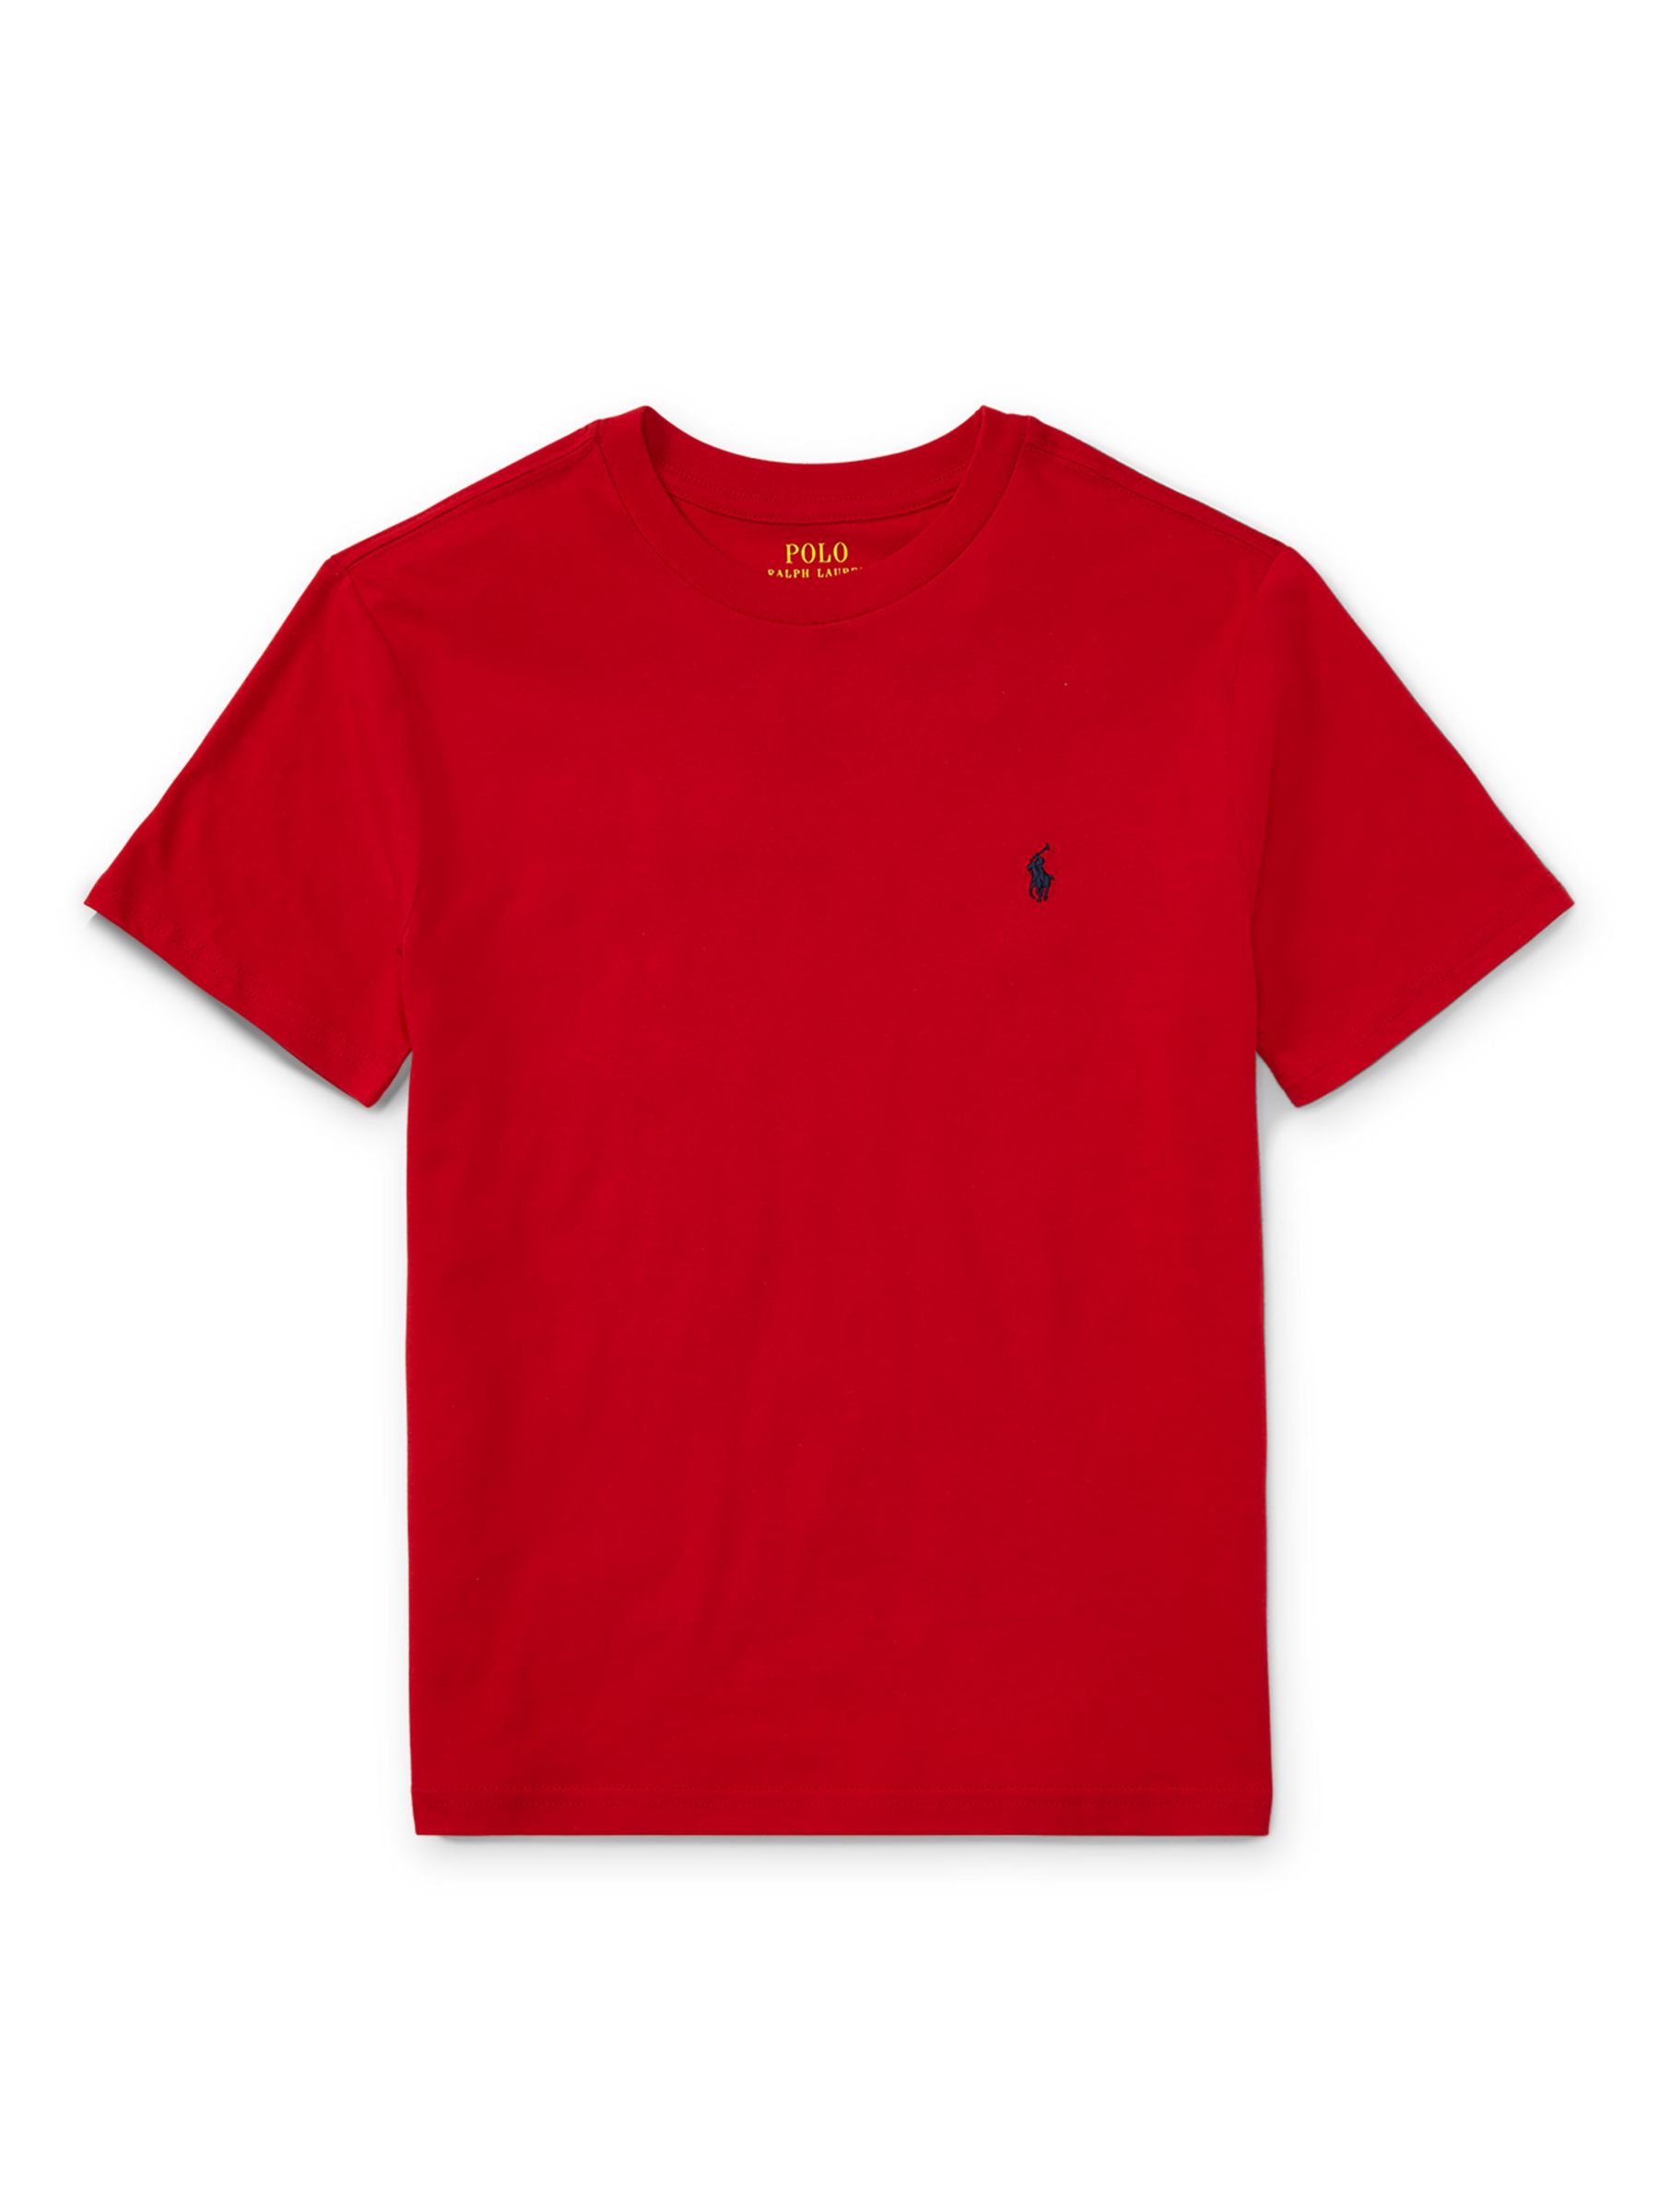 Ralph Lauren Kids' Cotton Signature Logo Short Sleeve T-Shirt, Red, M